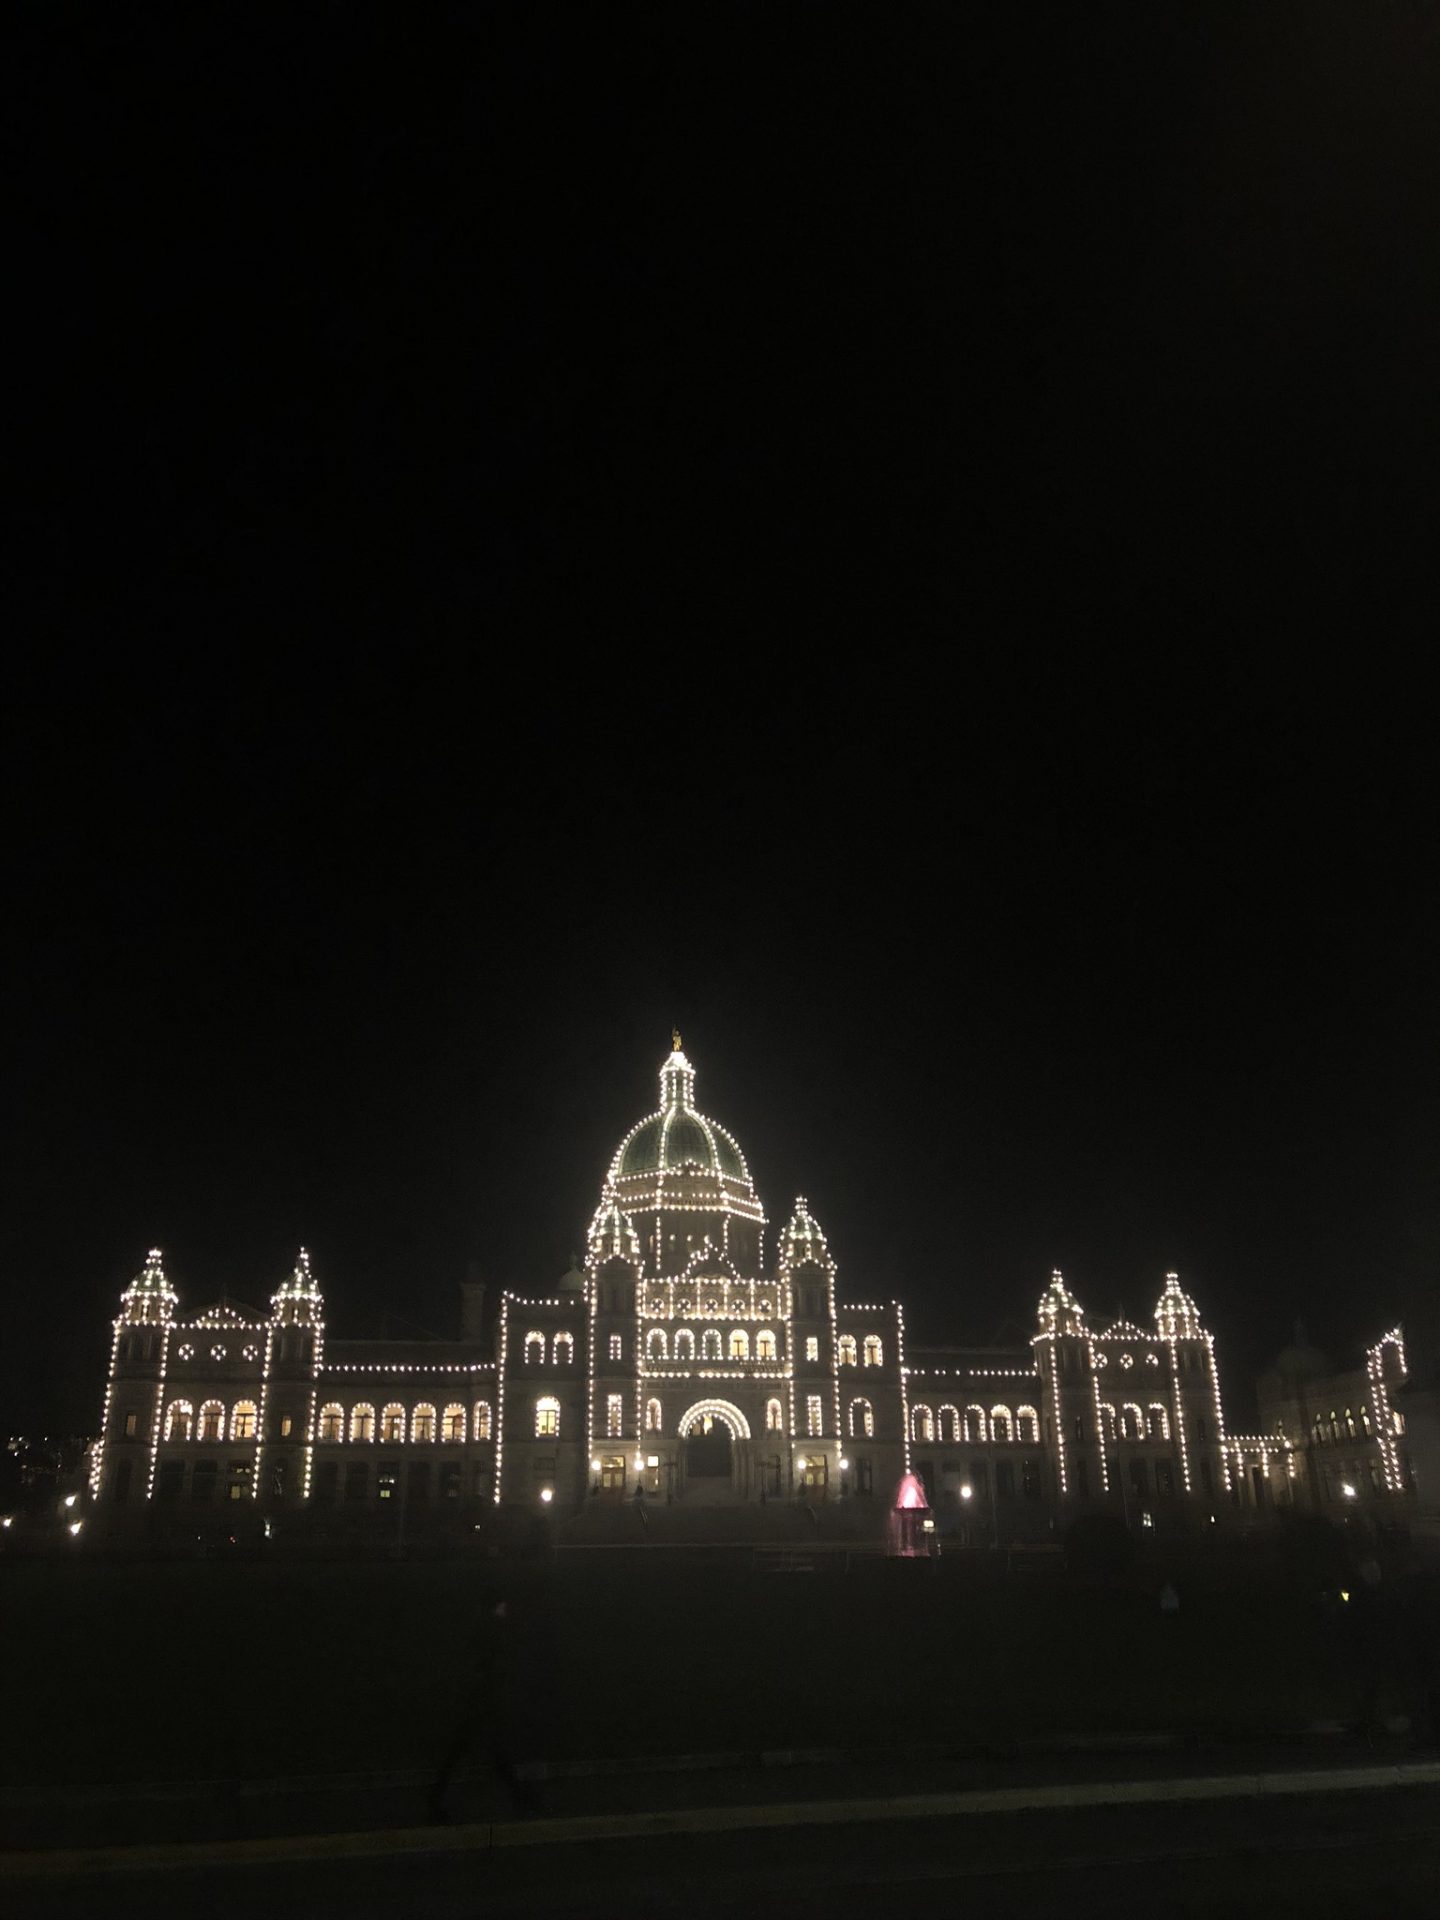 Parliament Buildings at night in Victoria, British Columbia 